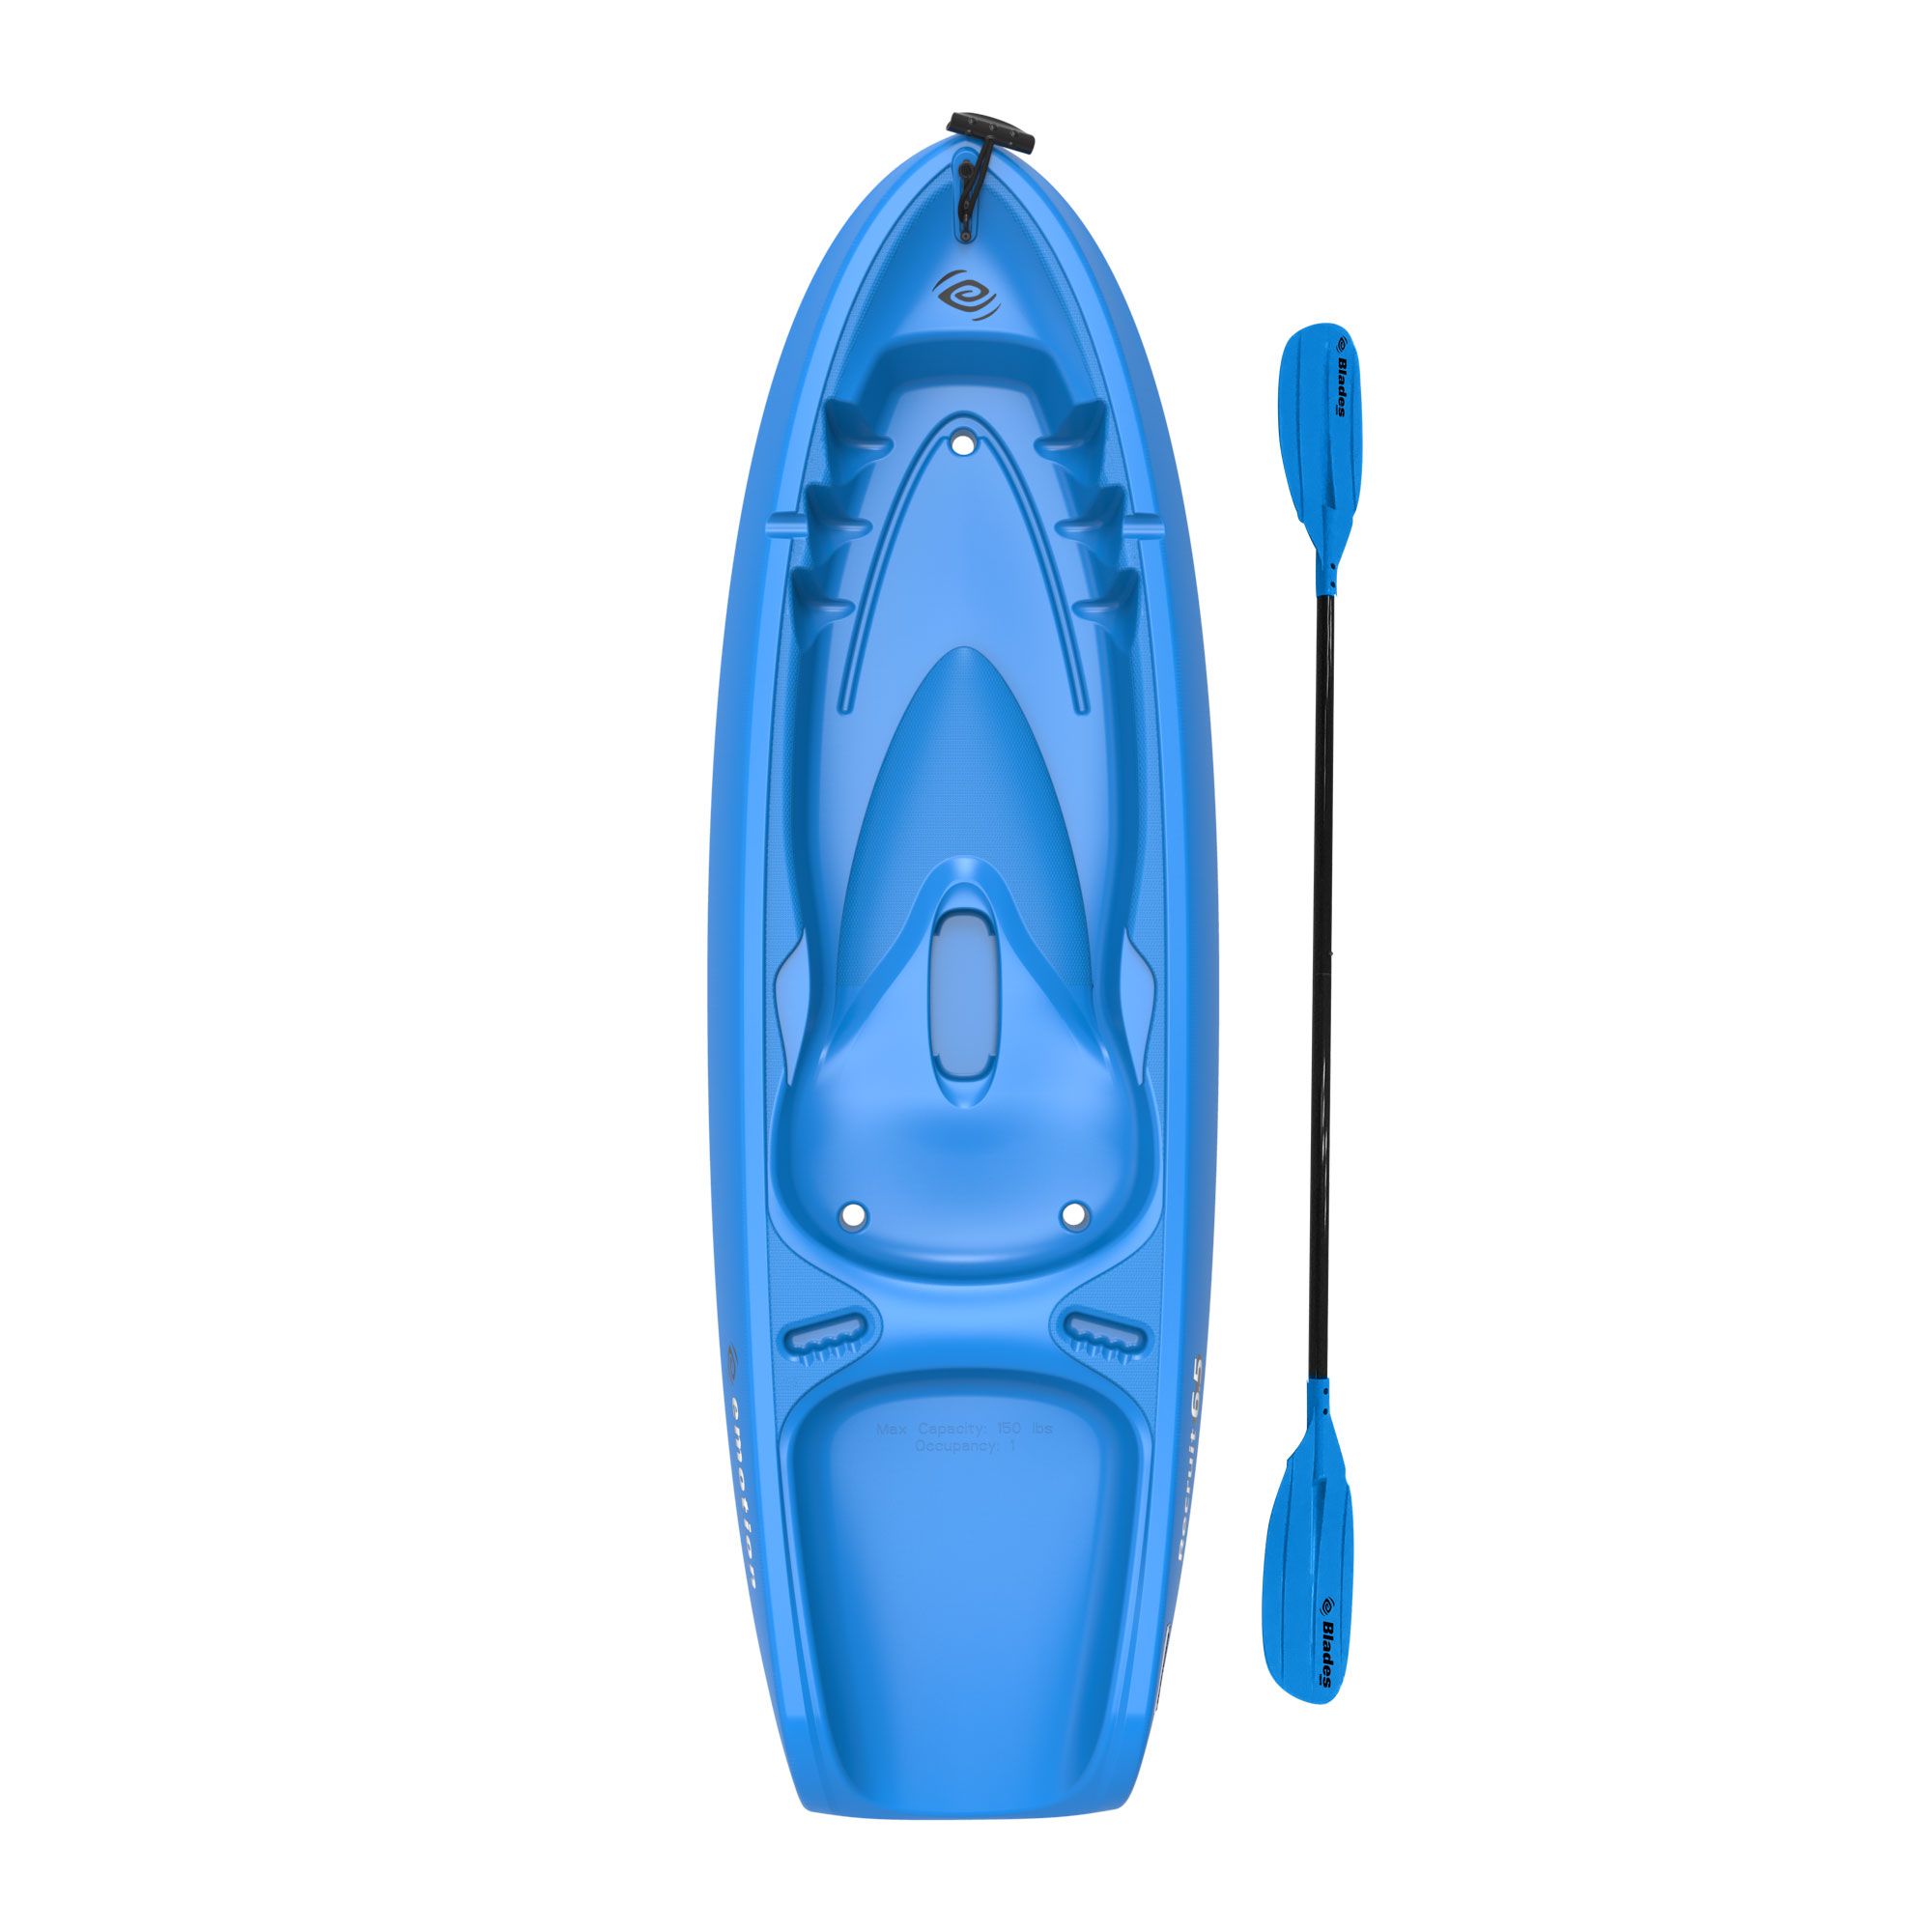 Lifetime Tamarack Angler Sit on Top 10 ft Fishing Kayak (Paddle, rack  Included) 81483812168 